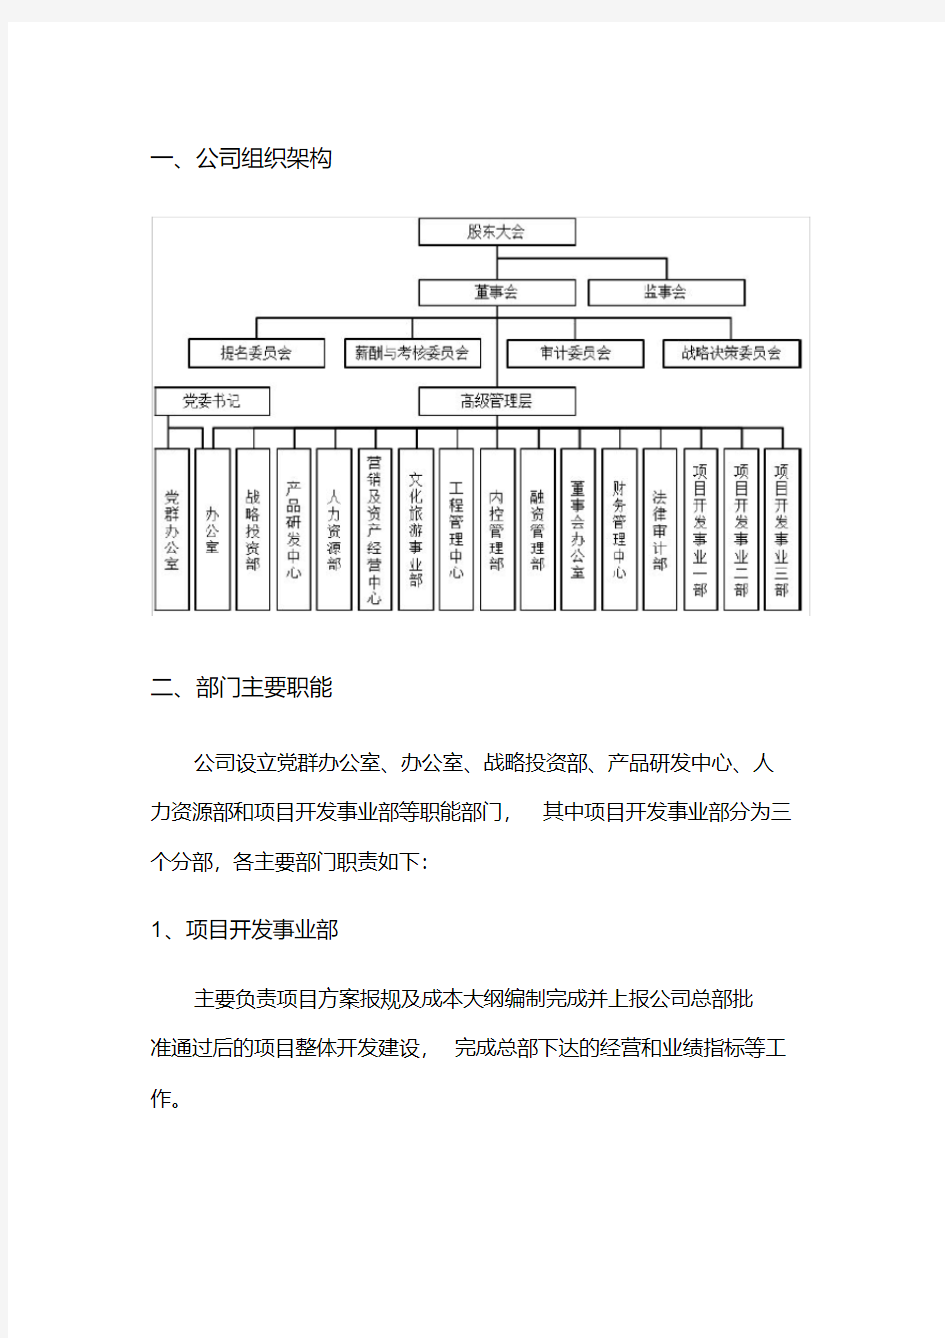 2019年云南城投公司组织架构和部门职能